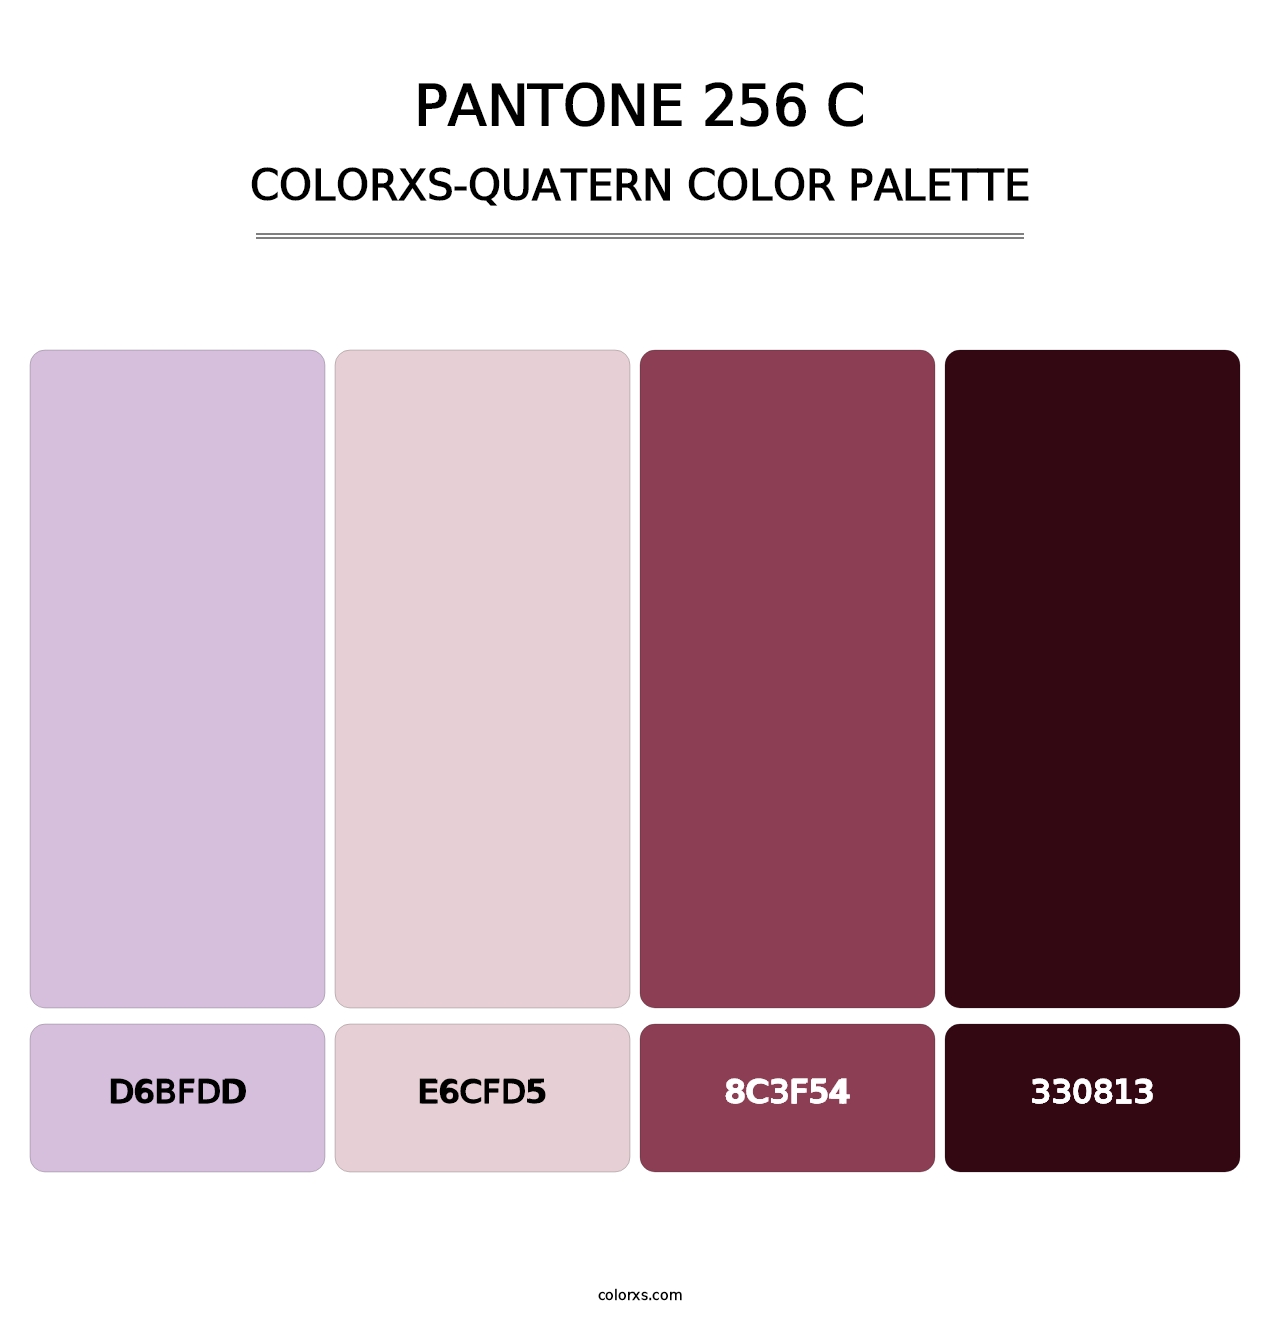 PANTONE 256 C - Colorxs Quatern Palette